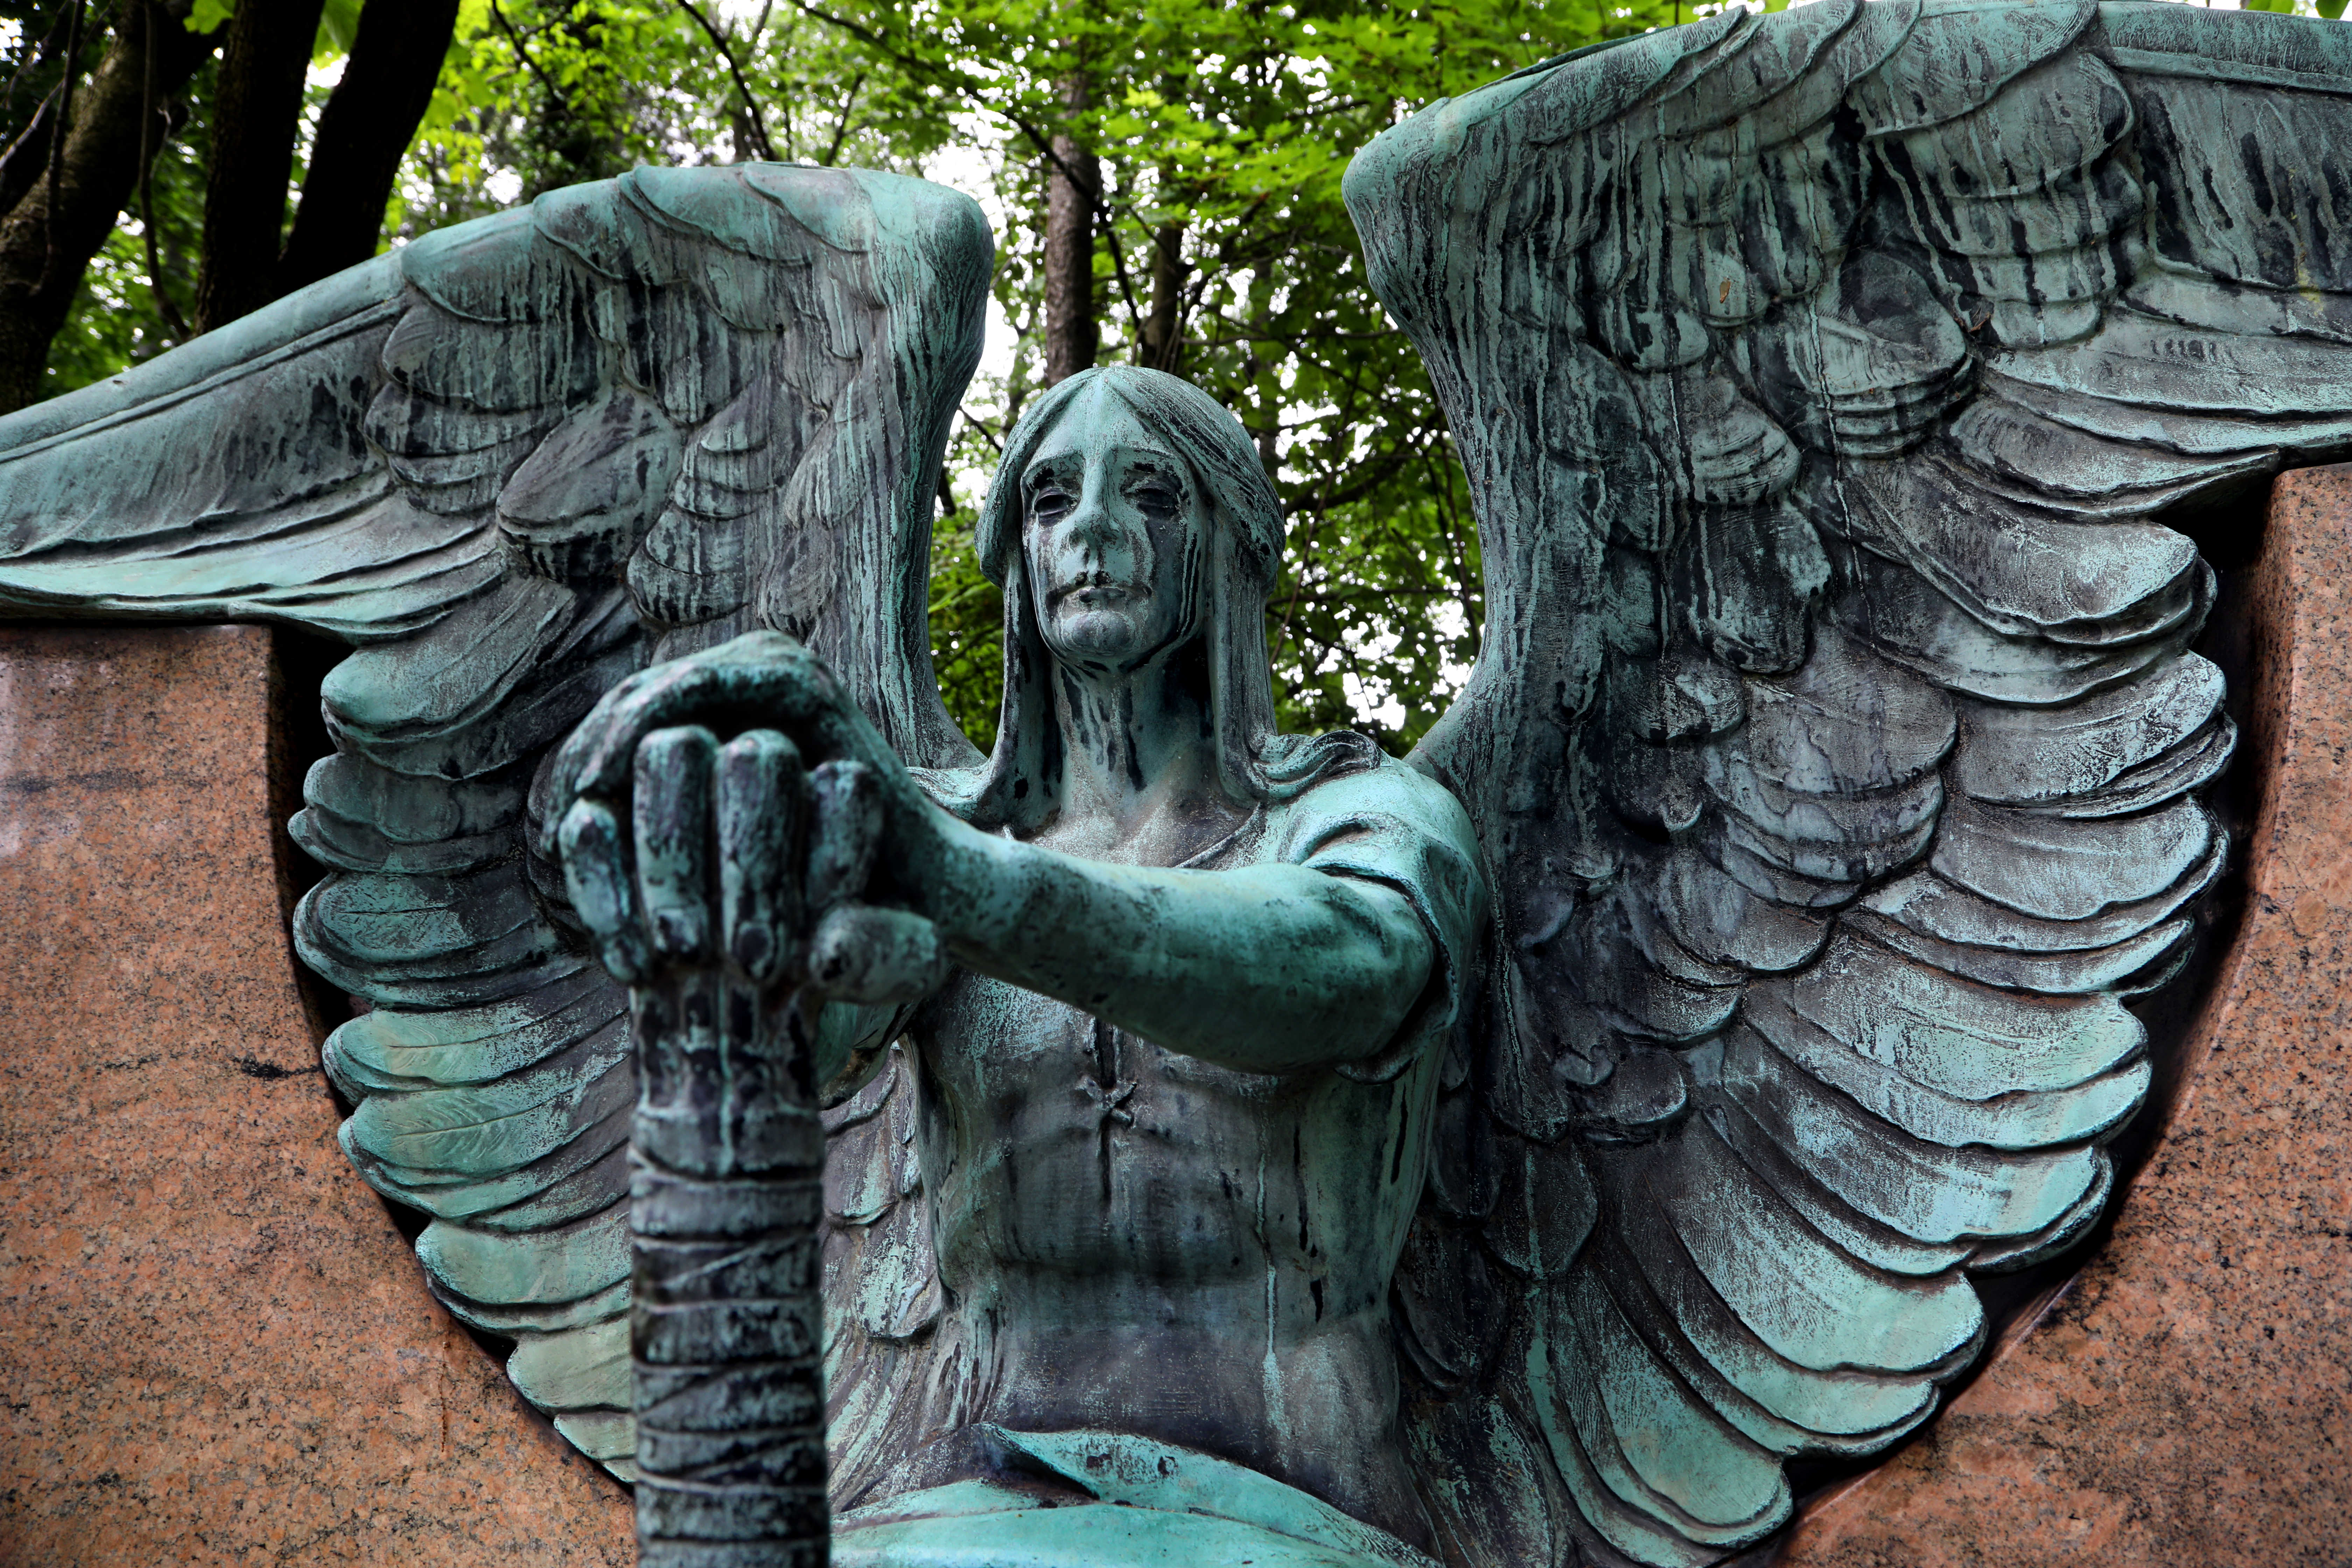 Il cimitero di Lake View a Cleveland si anima con eventi pubblici quest’estate